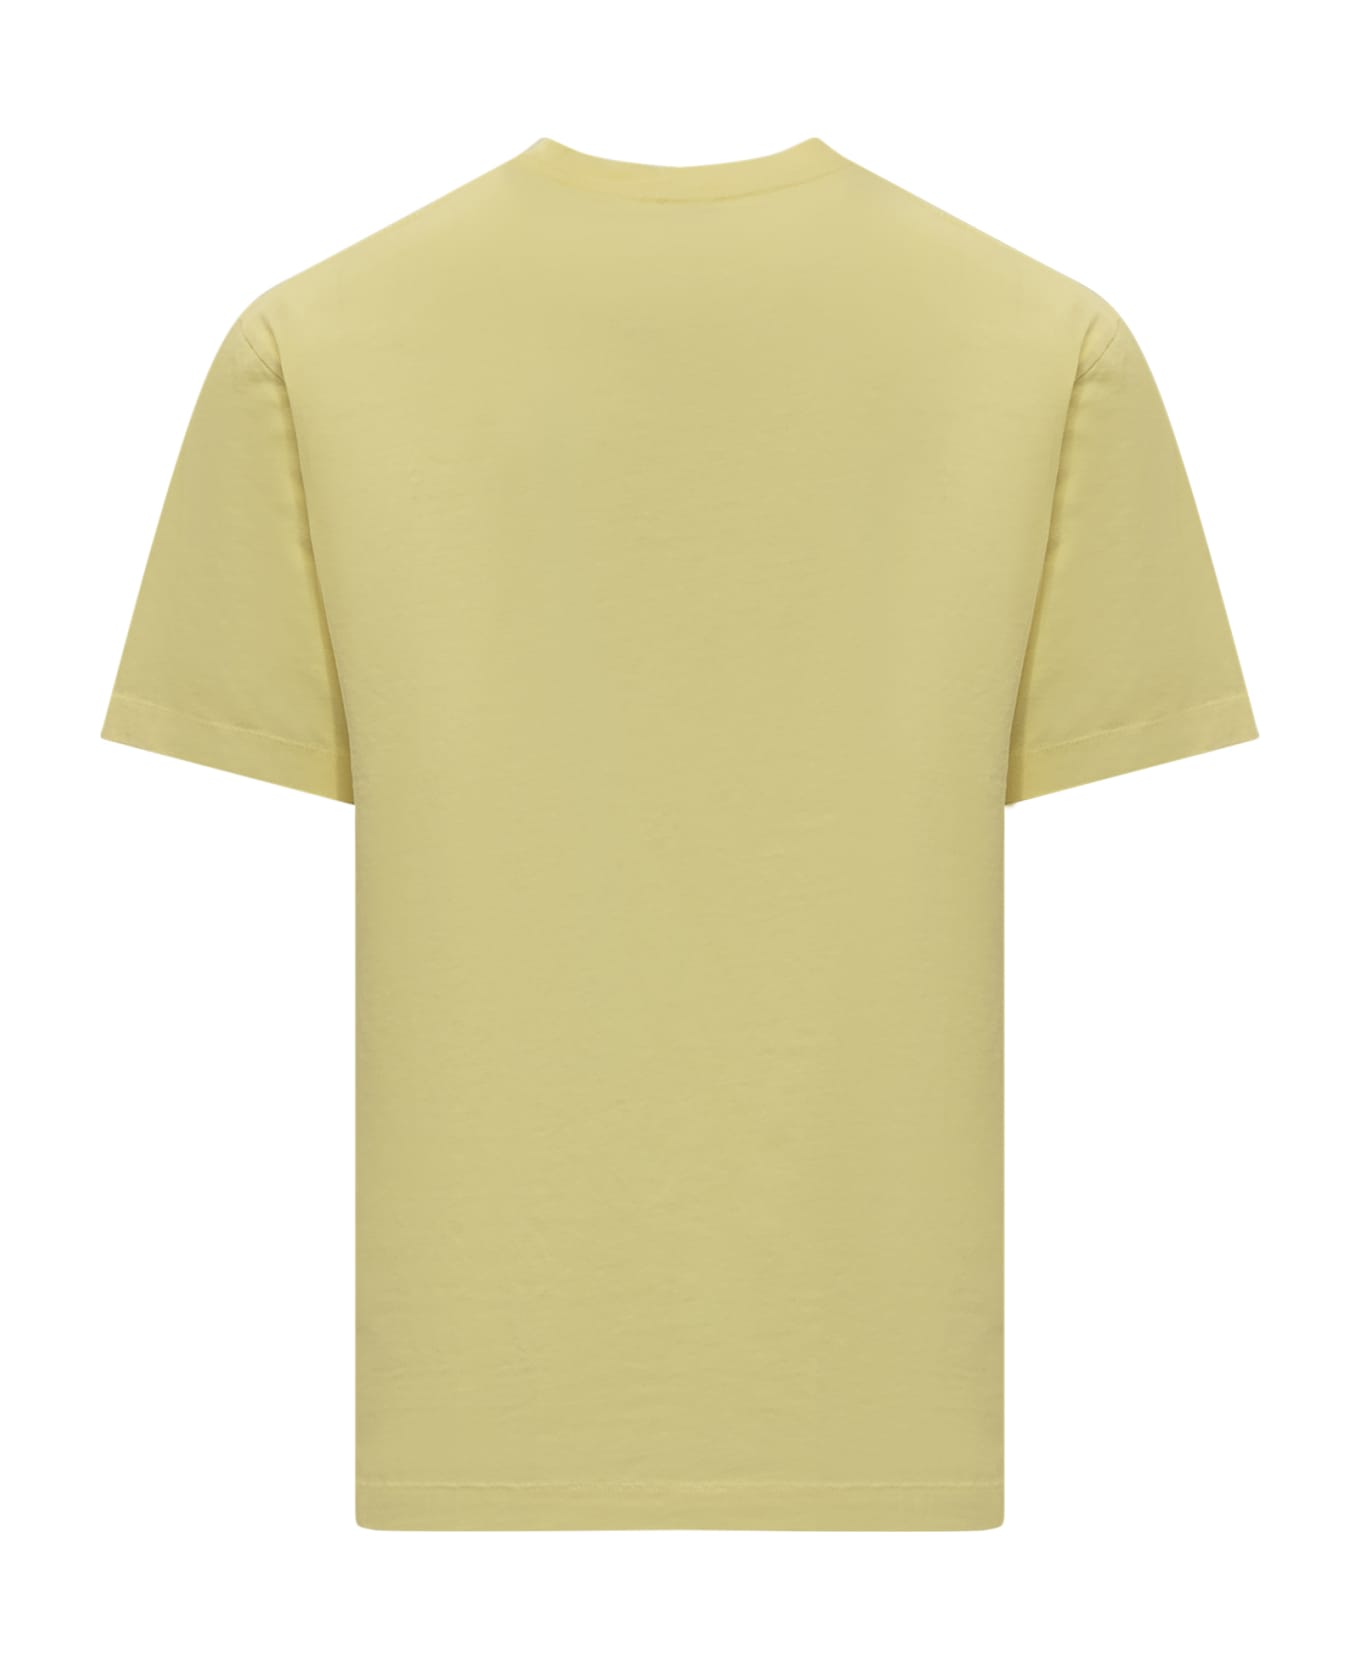 Kenzo Boke Flowe T-shirt - VANILLA シャツ